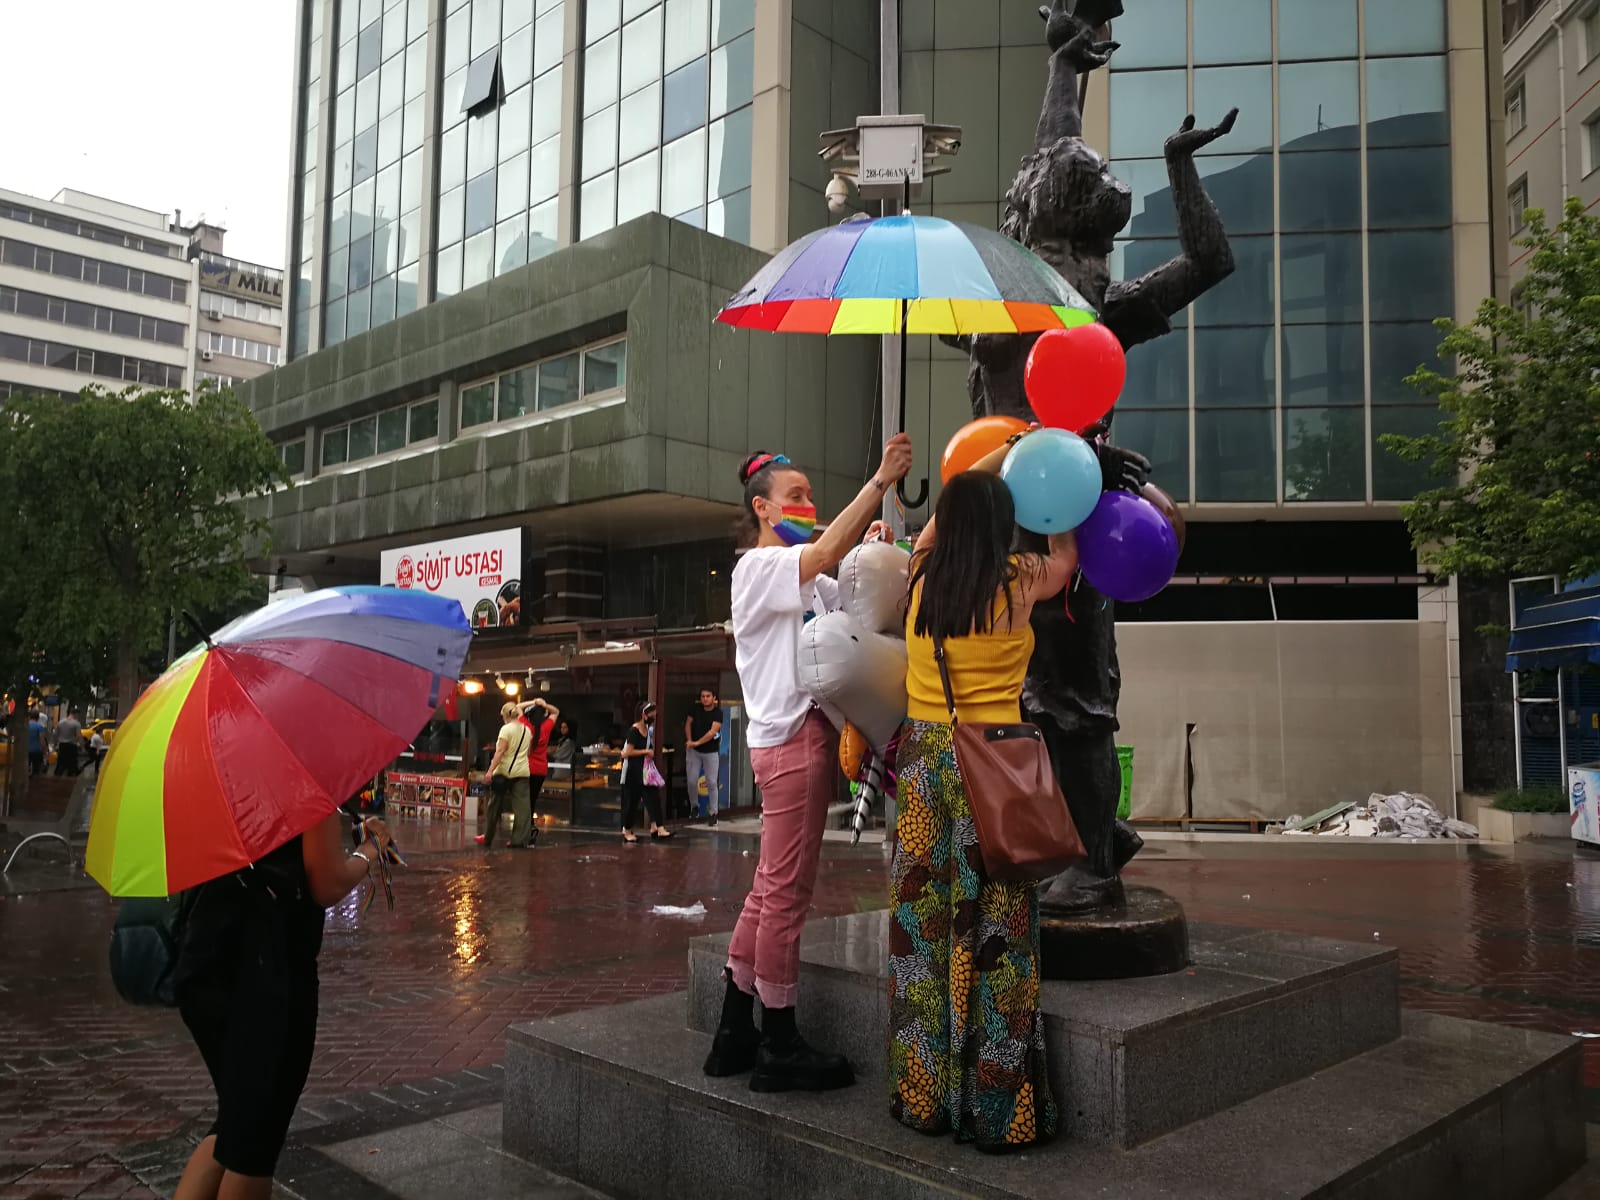 Ankara’da sivil polisten Onur eylemine: “Bu renkler olmaz” Kaos GL - LGBTİ+ Haber Portalı